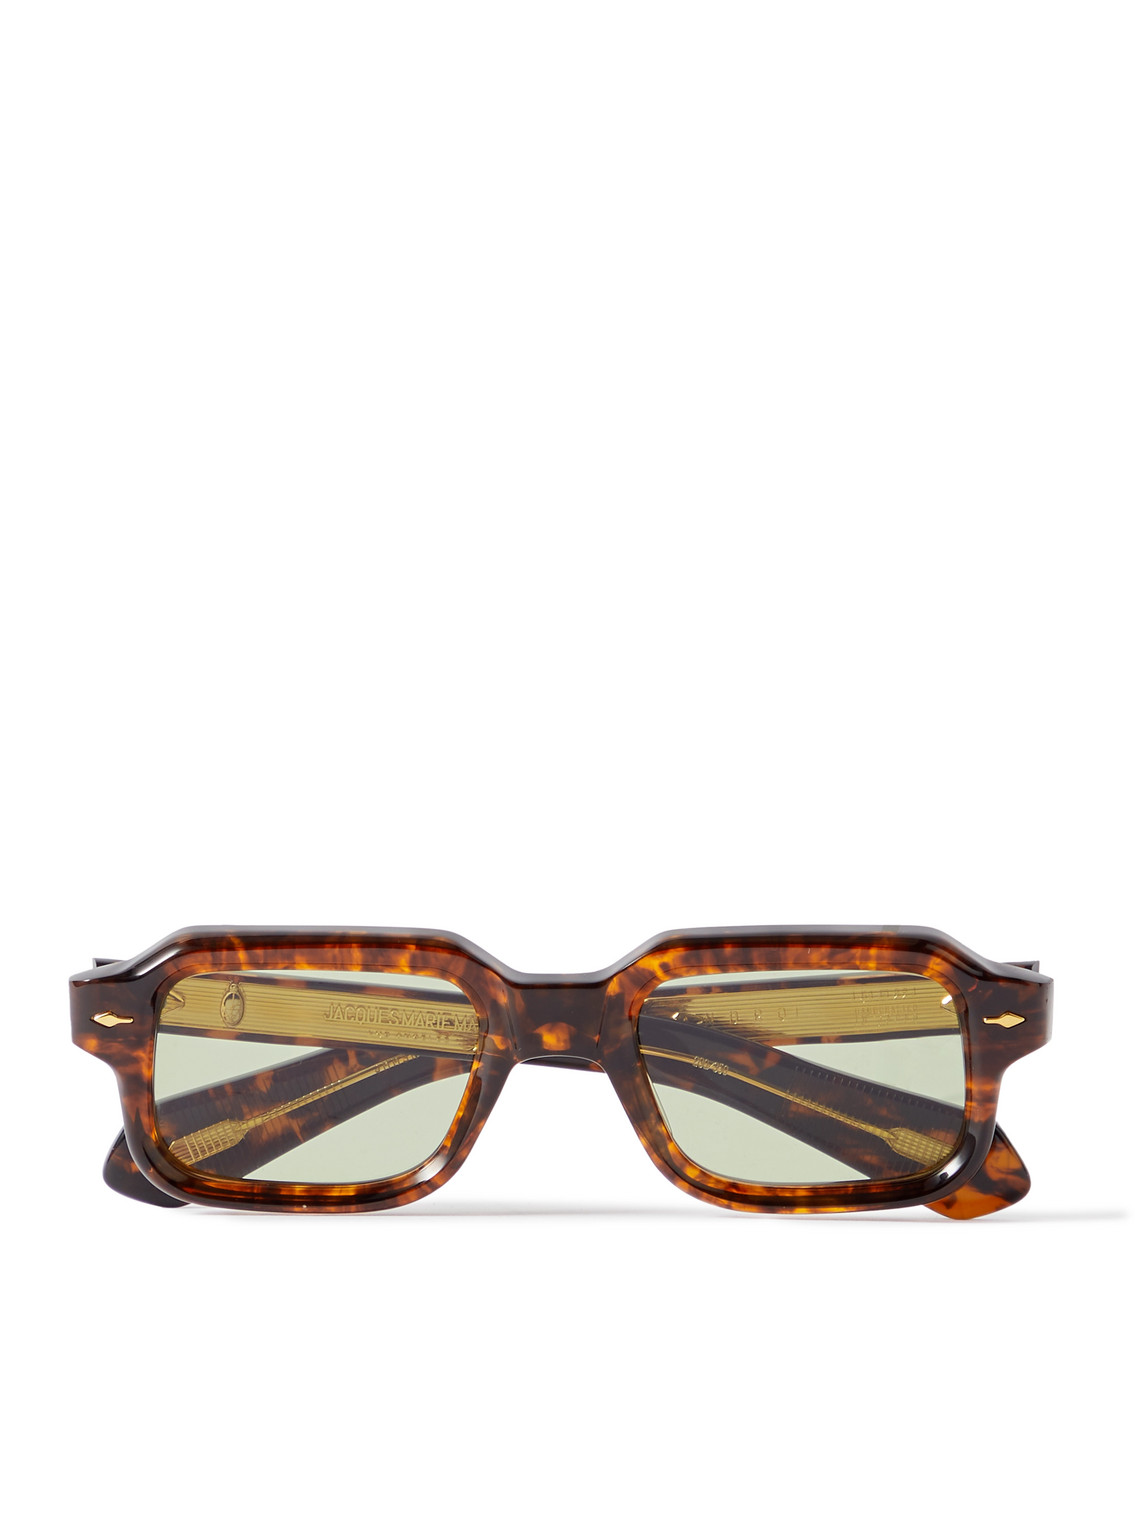 Jacques Marie Mage Sandro Square-frame Tortoiseshell Acetate Sunglasses